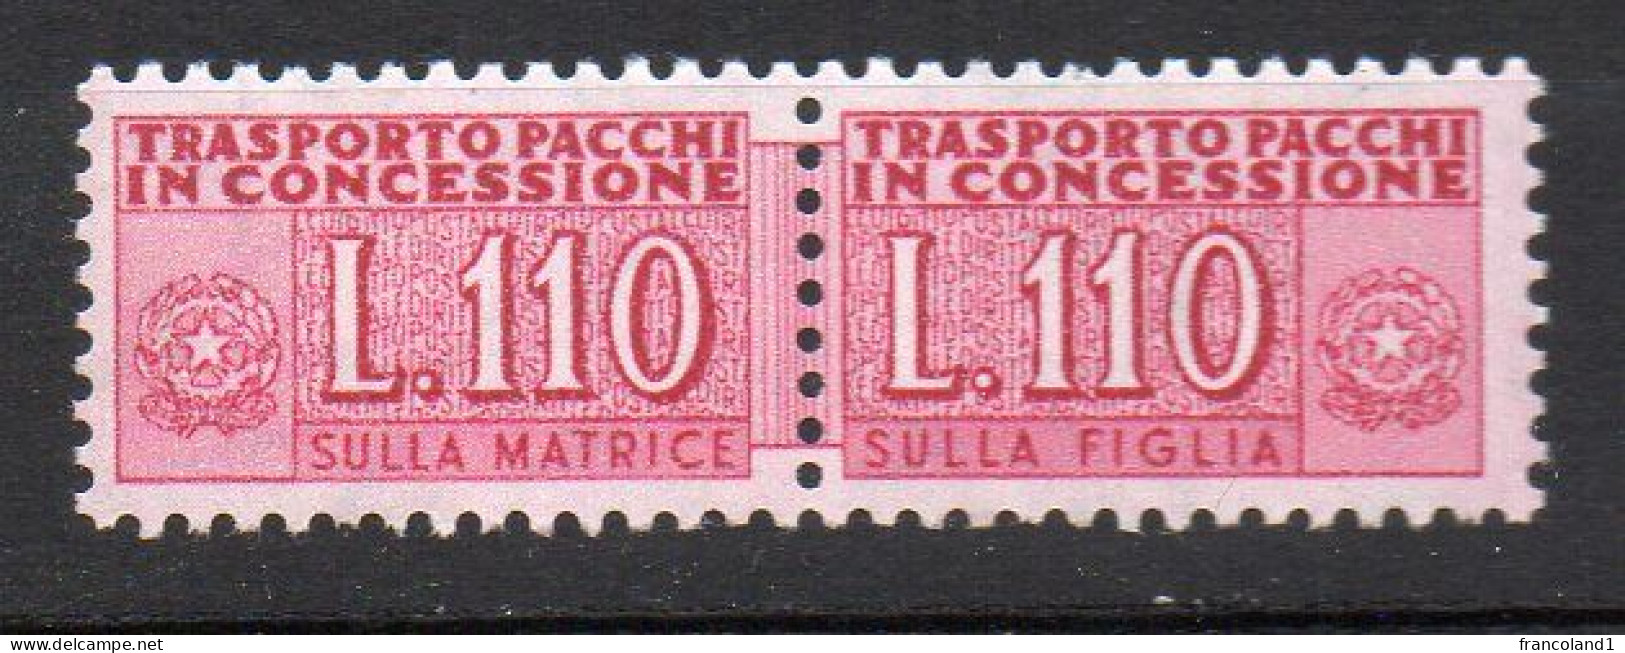 1955 - 81 Repubblica Italiana Pacco In Concessione N. 12 - 110 Lire Integro MNH** Firmato Diena - Pacchi In Concessione